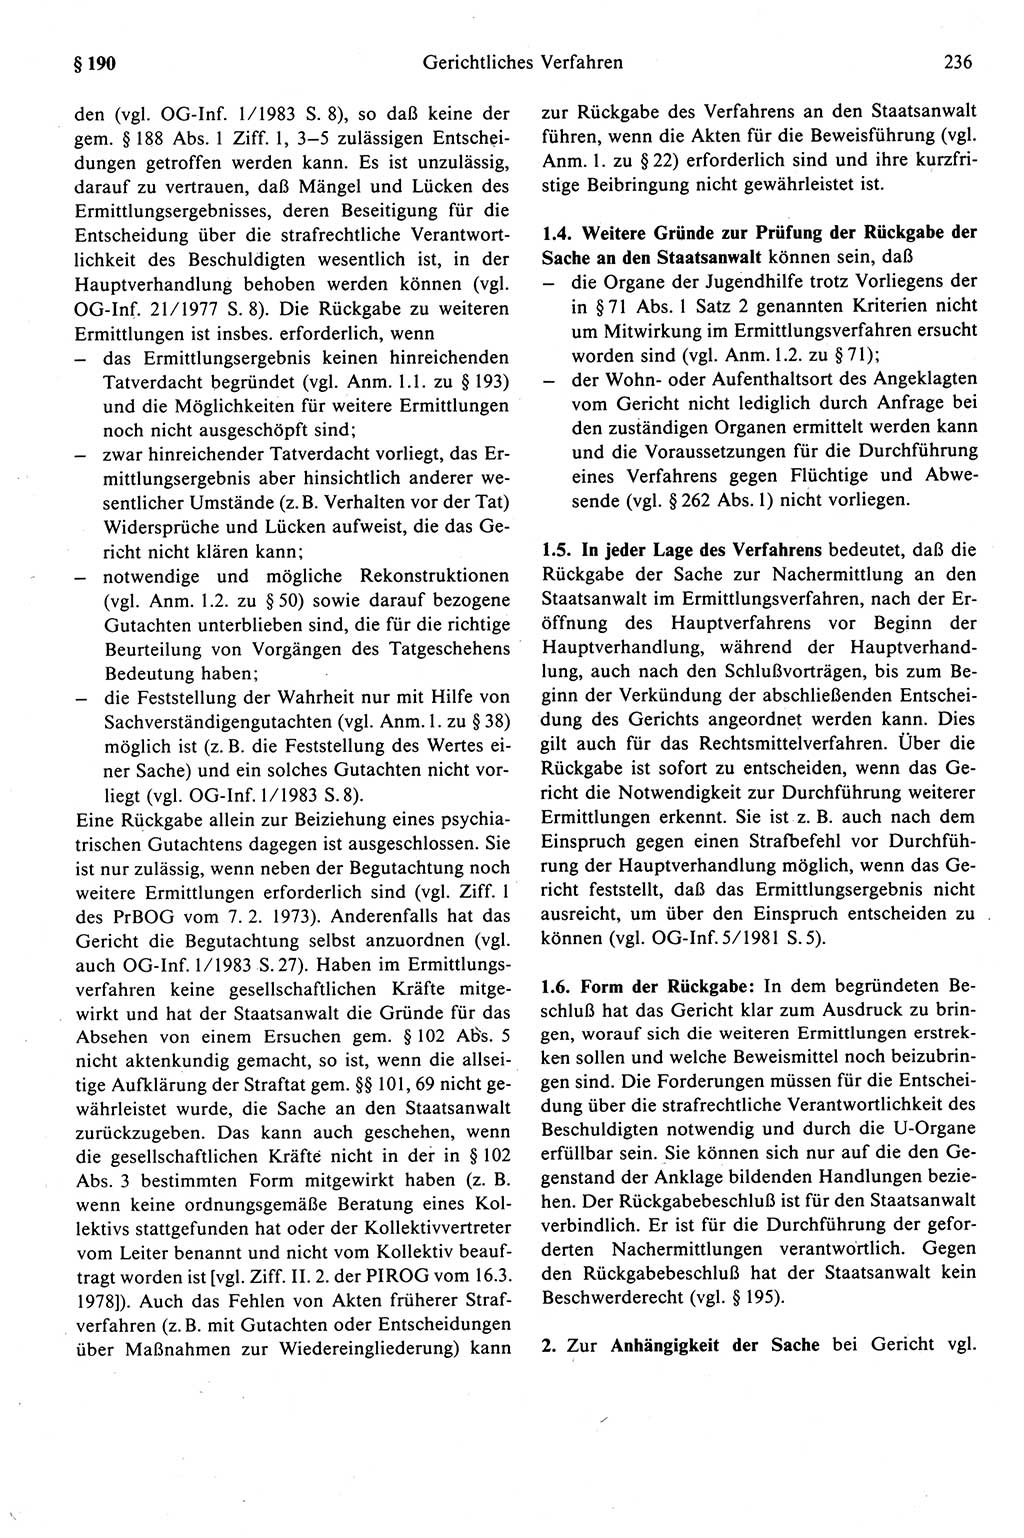 Strafprozeßrecht der DDR (Deutsche Demokratische Republik), Kommentar zur Strafprozeßordnung (StPO) 1989, Seite 236 (Strafprozeßr. DDR Komm. StPO 1989, S. 236)